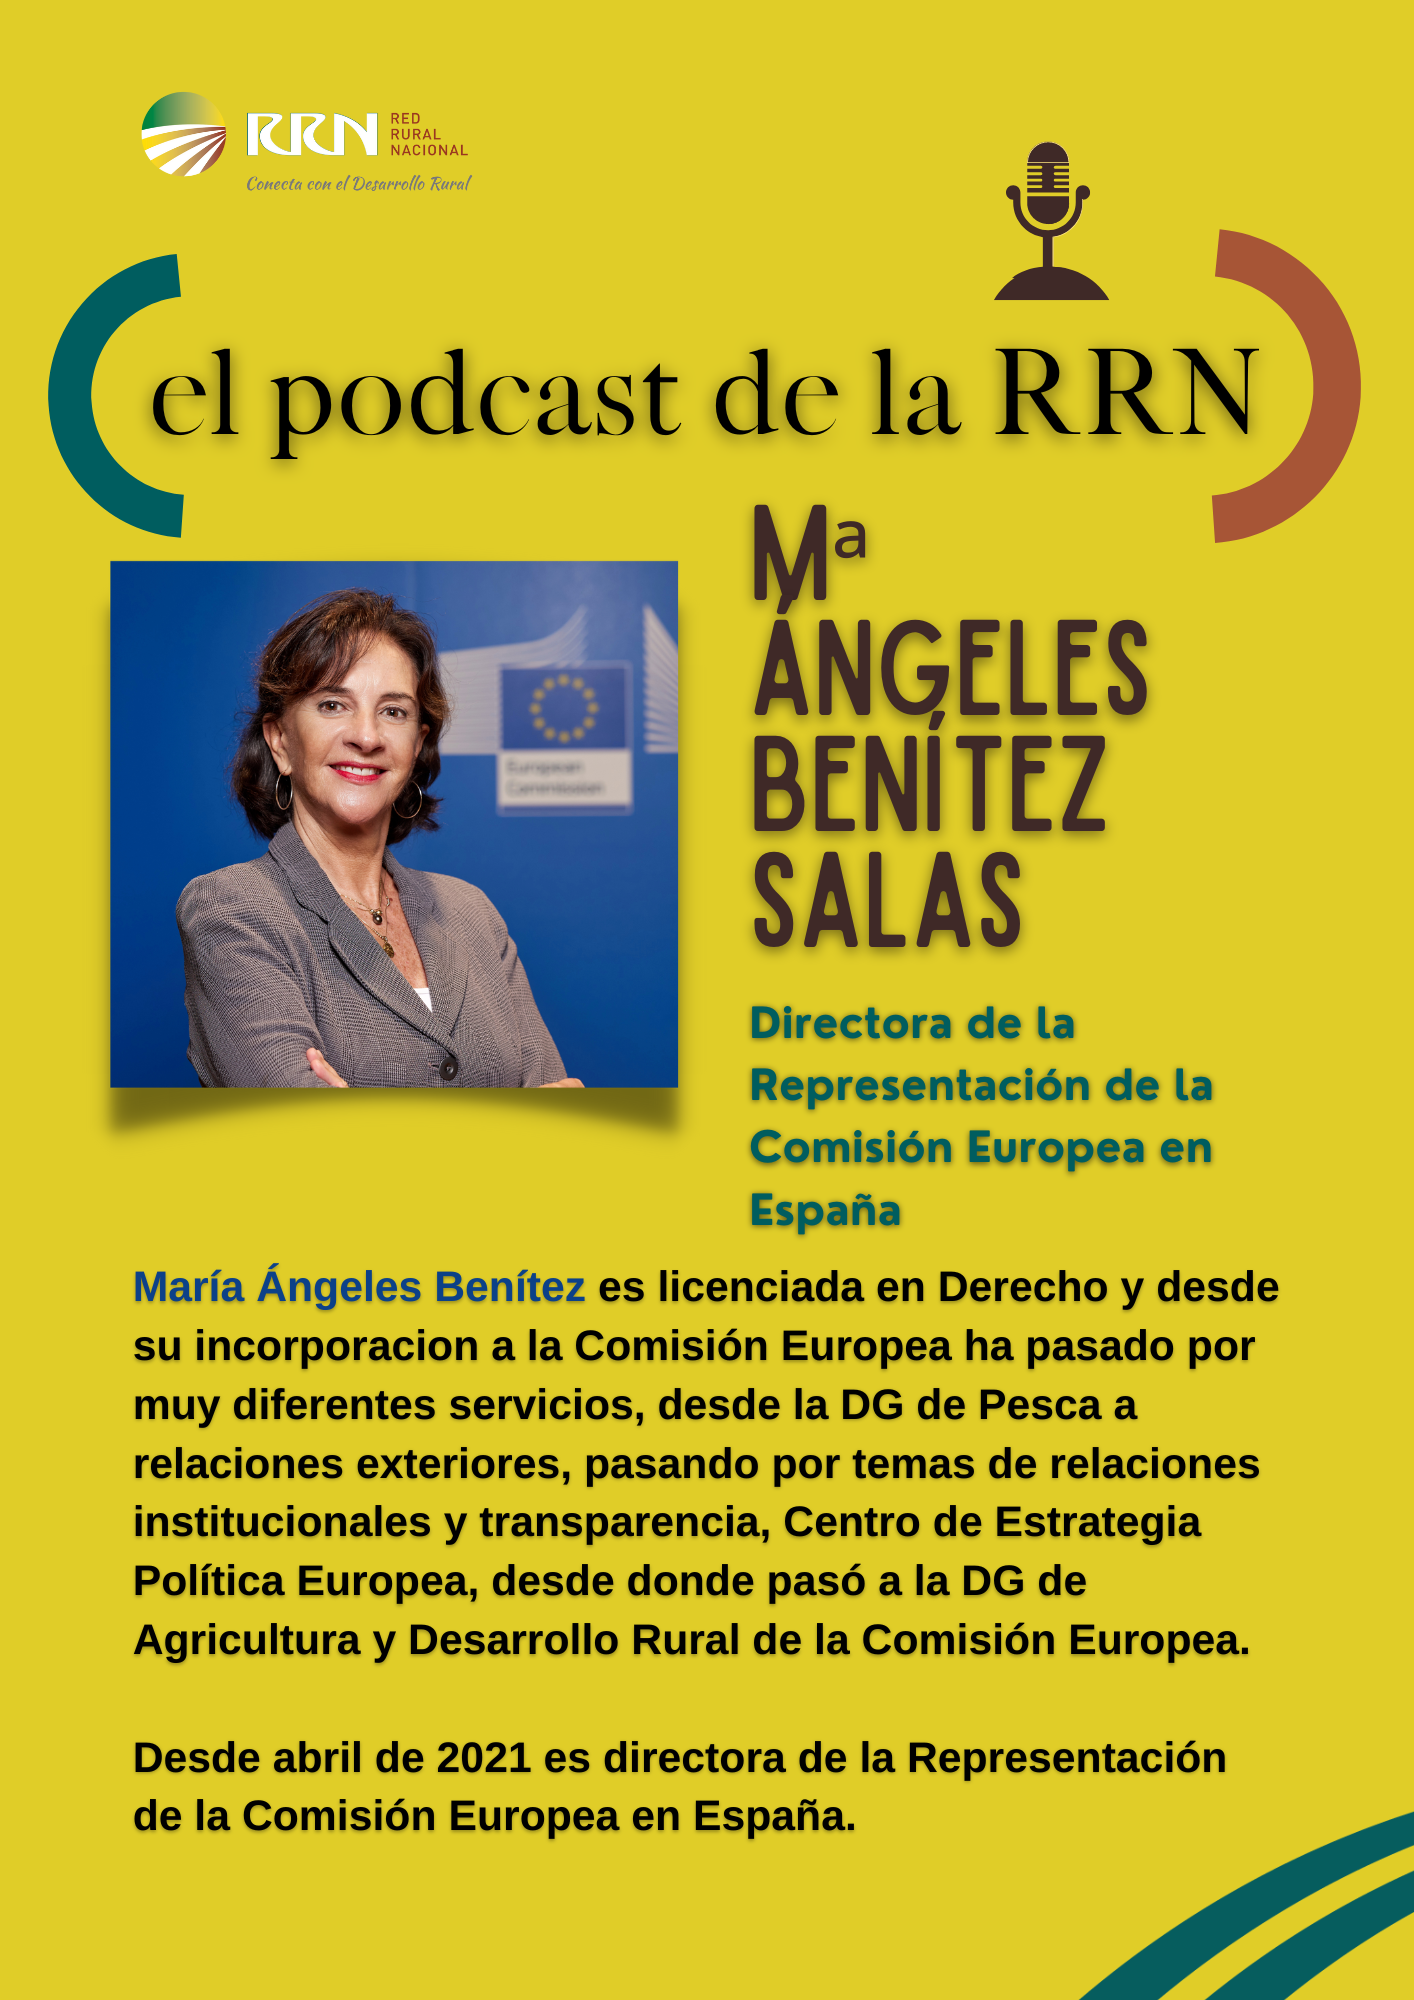 Podcast de la RRN con Mª Ángeles Benítez Salas, directora de la Representación de la Comisión Europea en España desde 2021